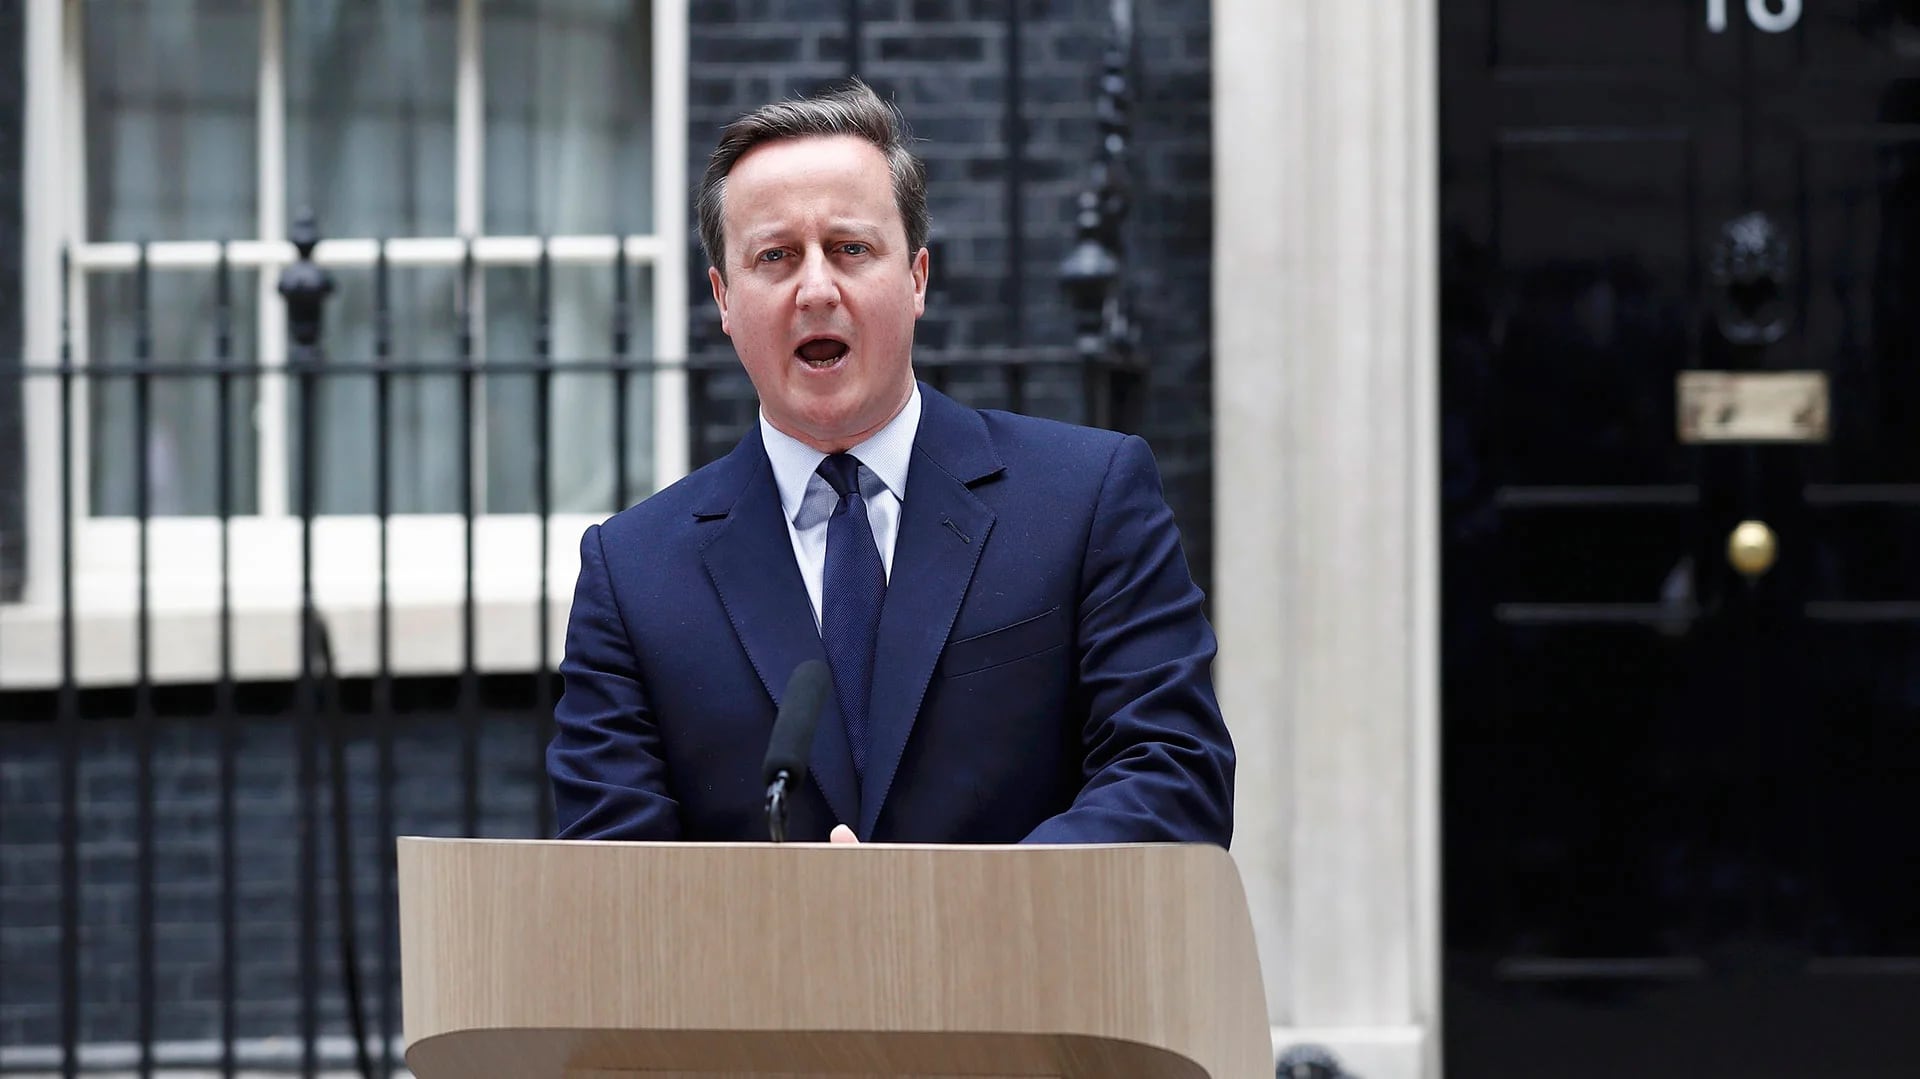 Tras la victoria del Brexit, David Cameron renunció como primer ministro del Reino Unido. (Reuters)